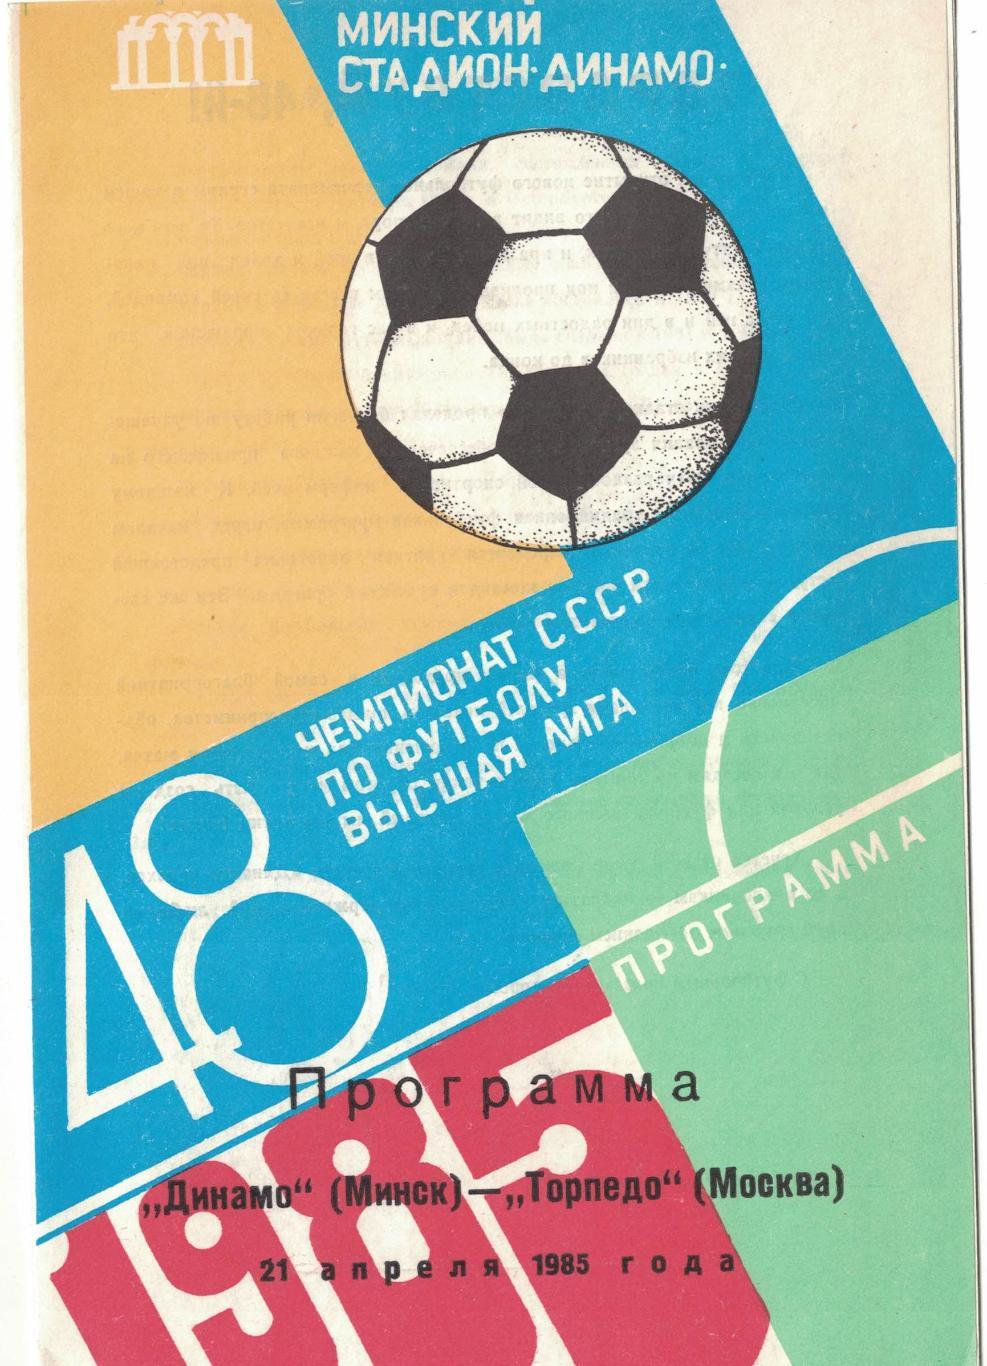 Динамо Минск - Торпедо Москва 21.04.1985 Чемпионат СССР Синяя